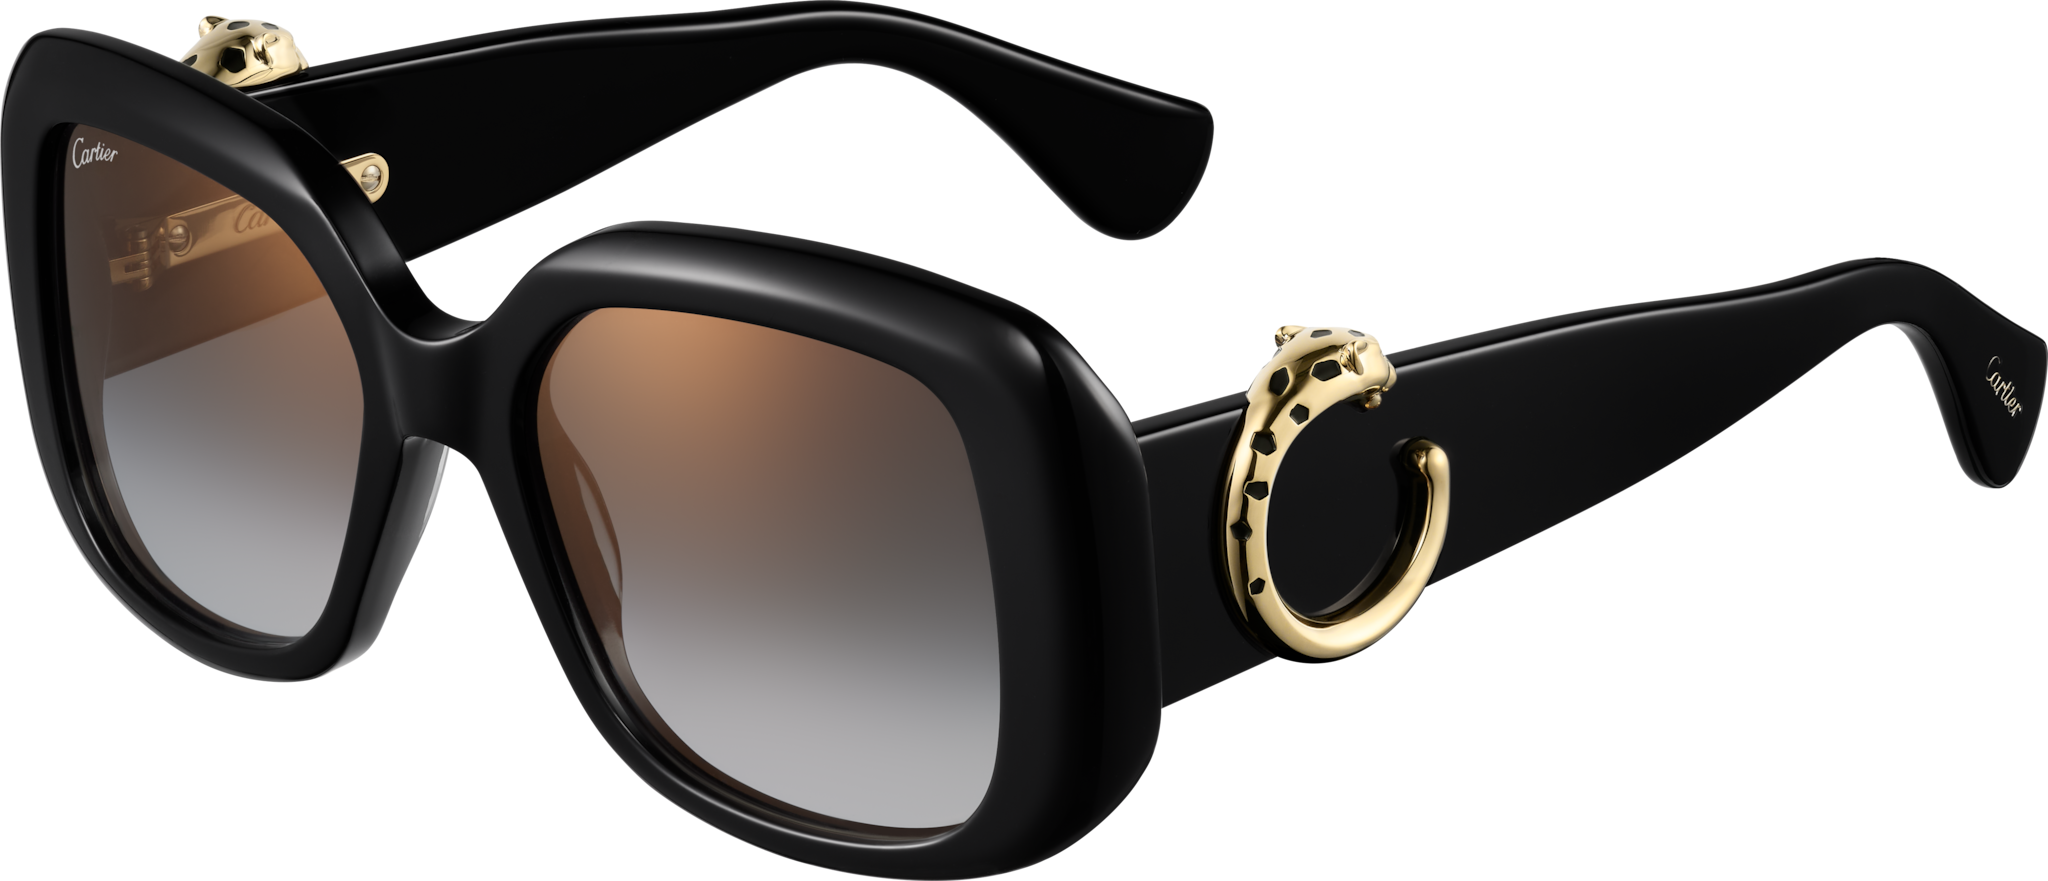 Gafas de sol Panthère de CartierAcetato negro, lentes grises